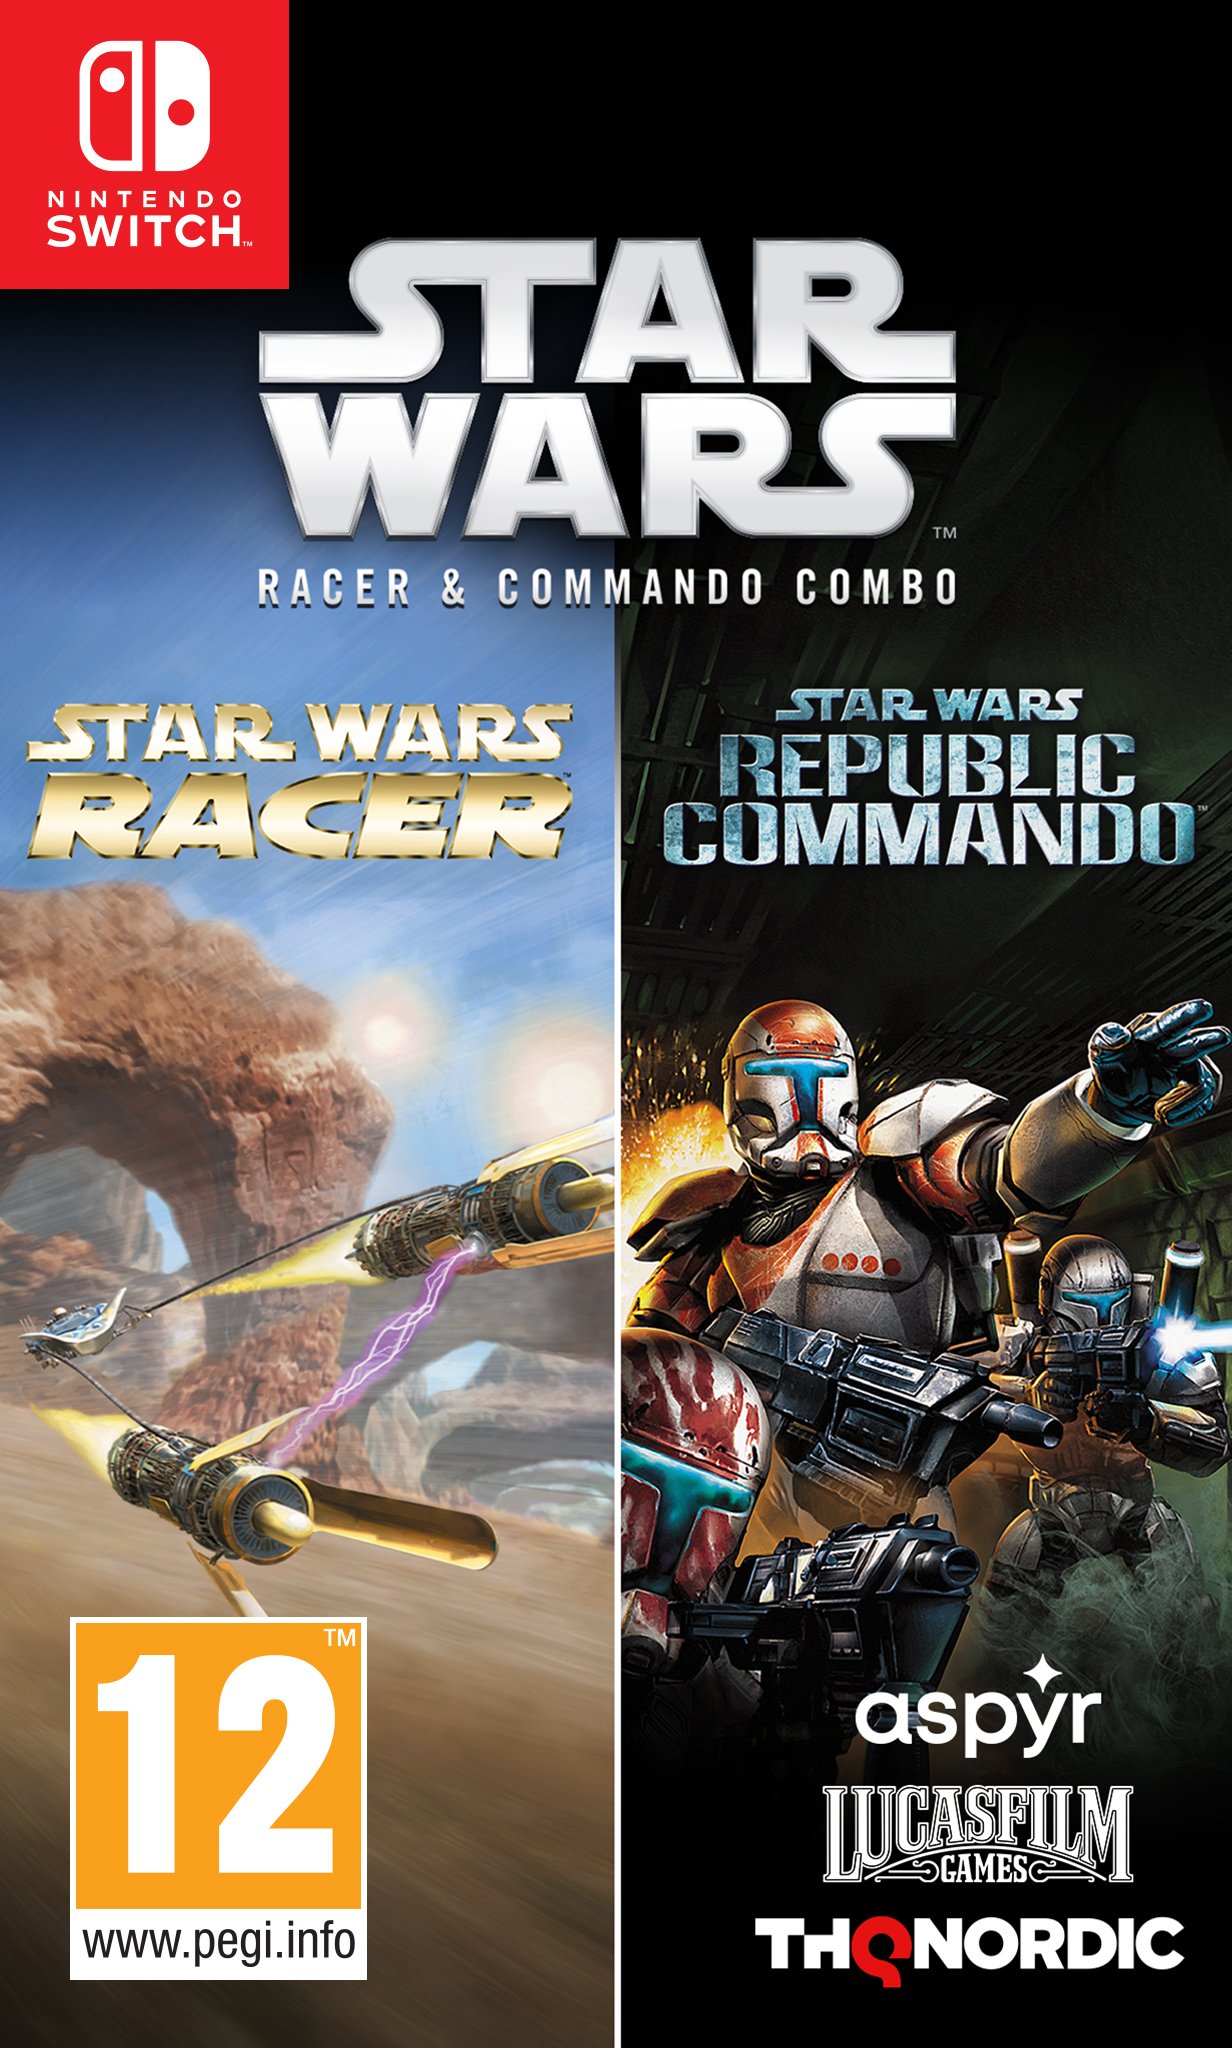 Star Wars Racer&Commando Combo von Star wars